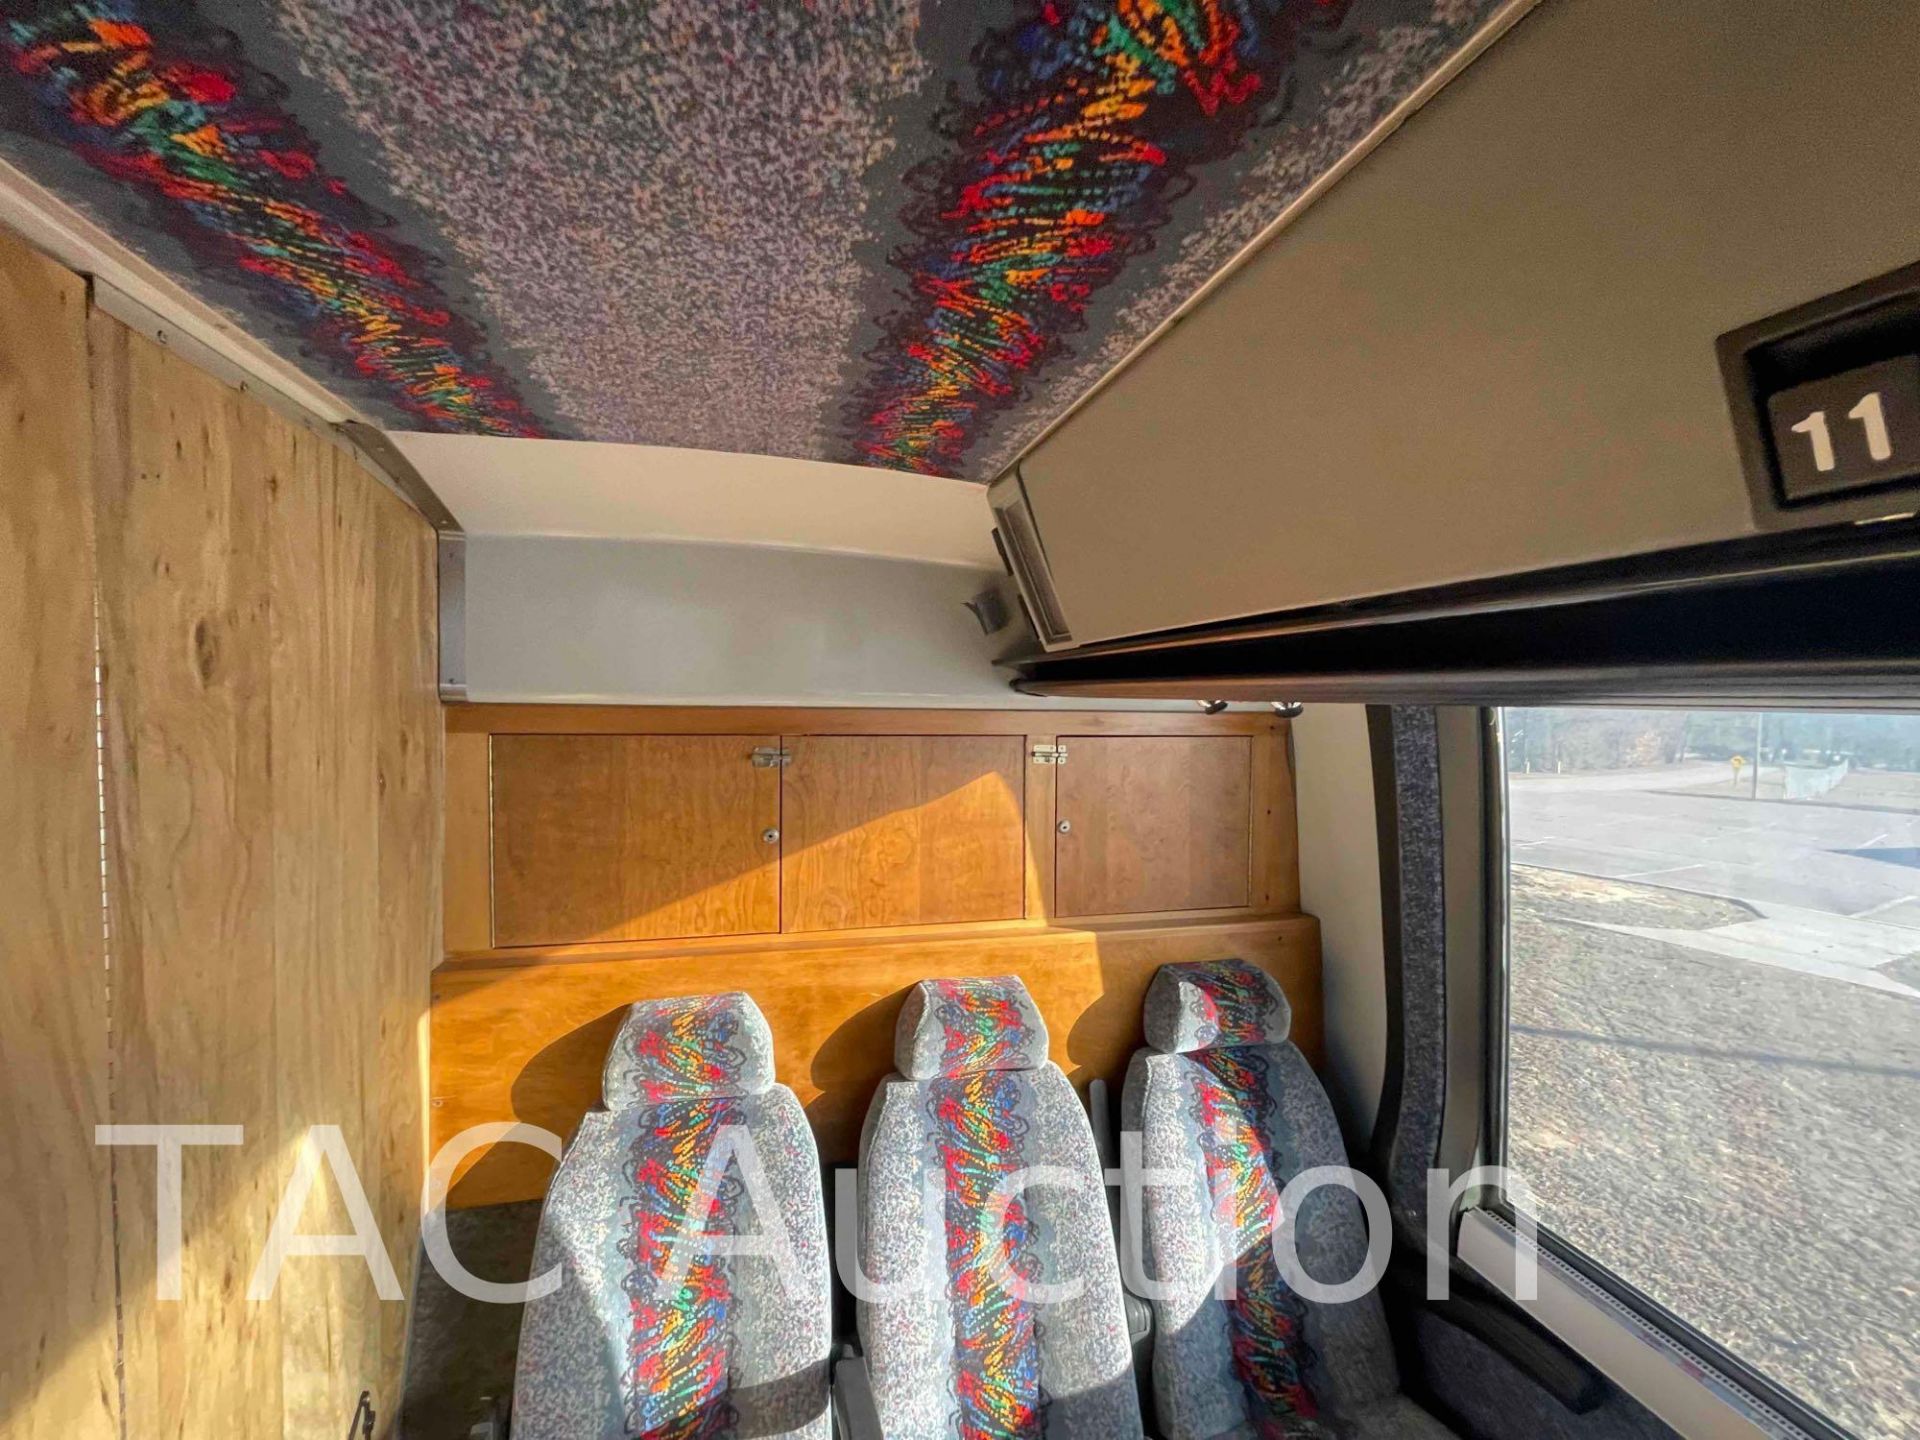 1989 Prevost LE Mirage Coach 48 Passenger Bus - Image 58 of 93